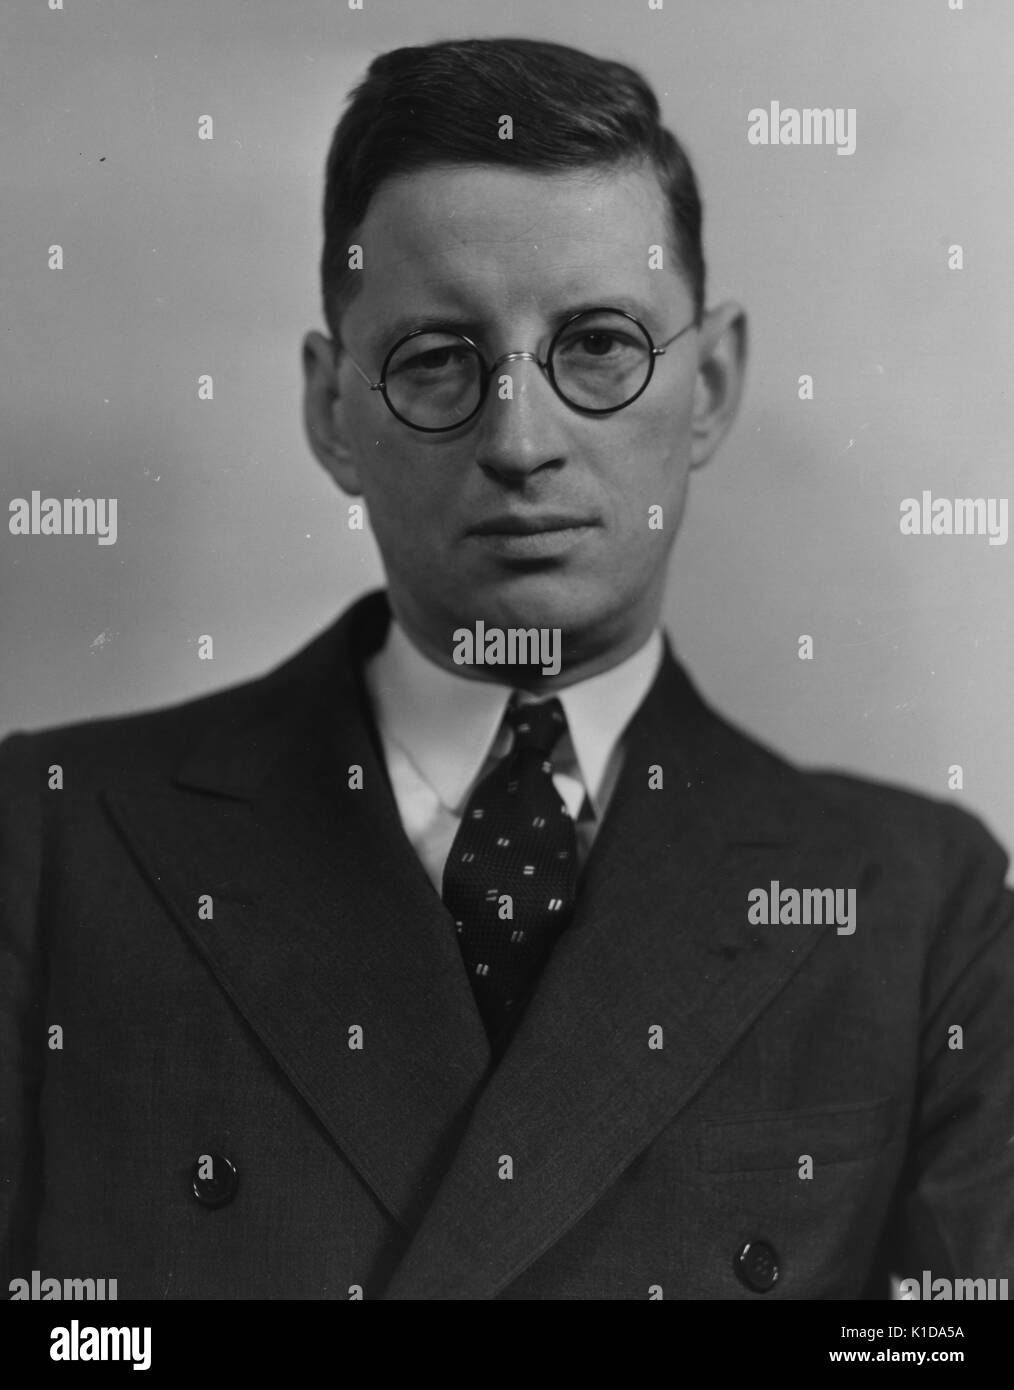 Ein Mitarbeiter der Farm Security Administration (FSA), in Anzug und Brille, posiert für ein Portrait, 1935. Von der New York Public Library. Stockfoto